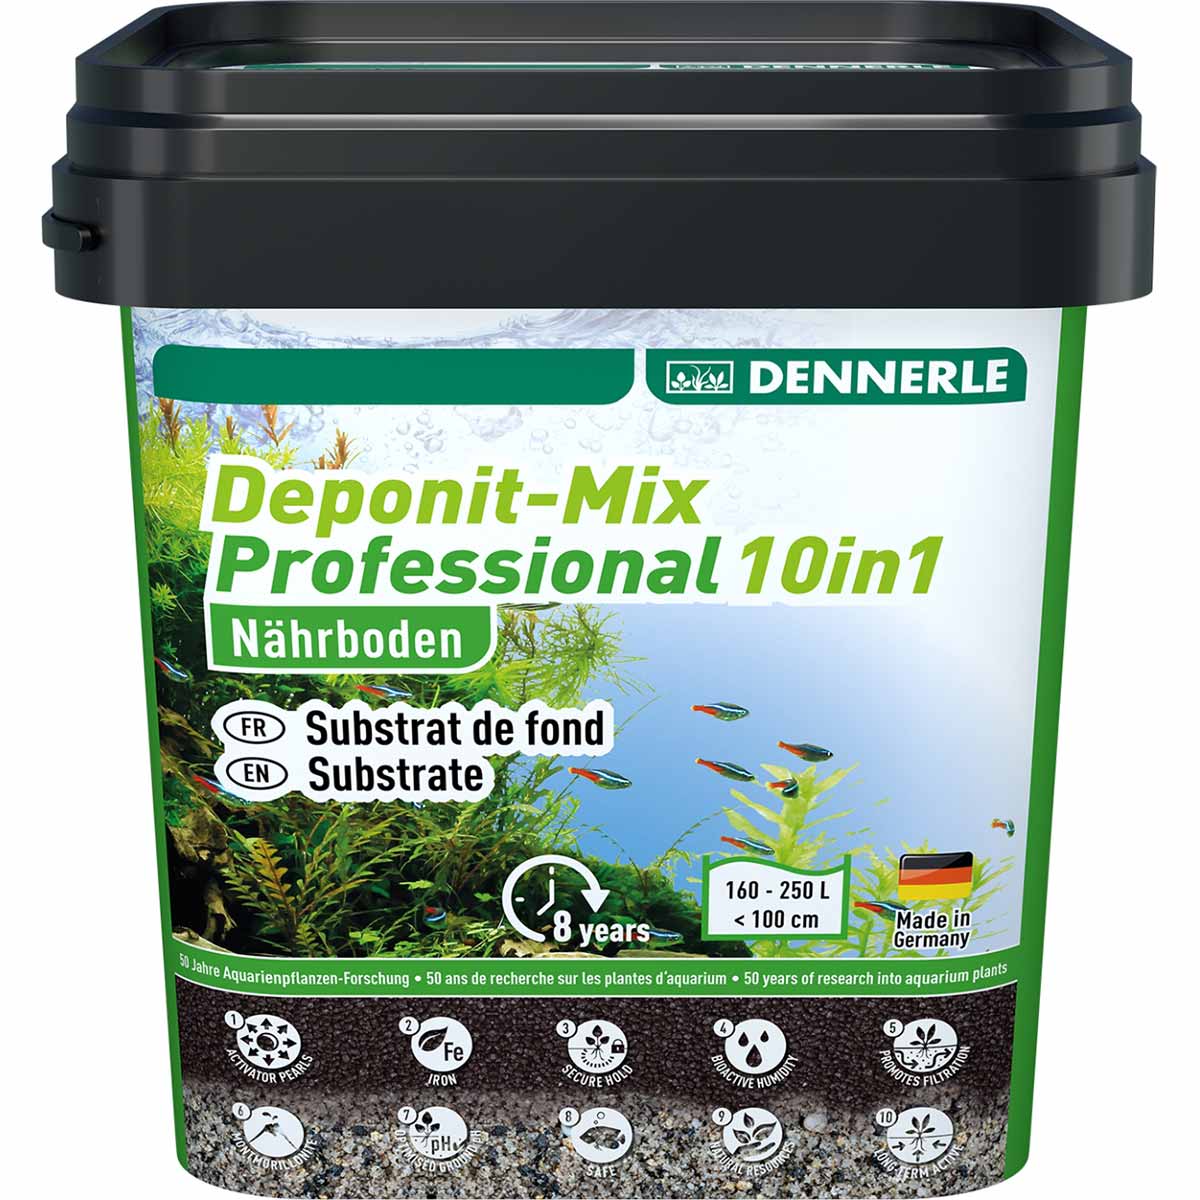 Dennerle Deponit Mix Professional 10 v 1 9,6 kg